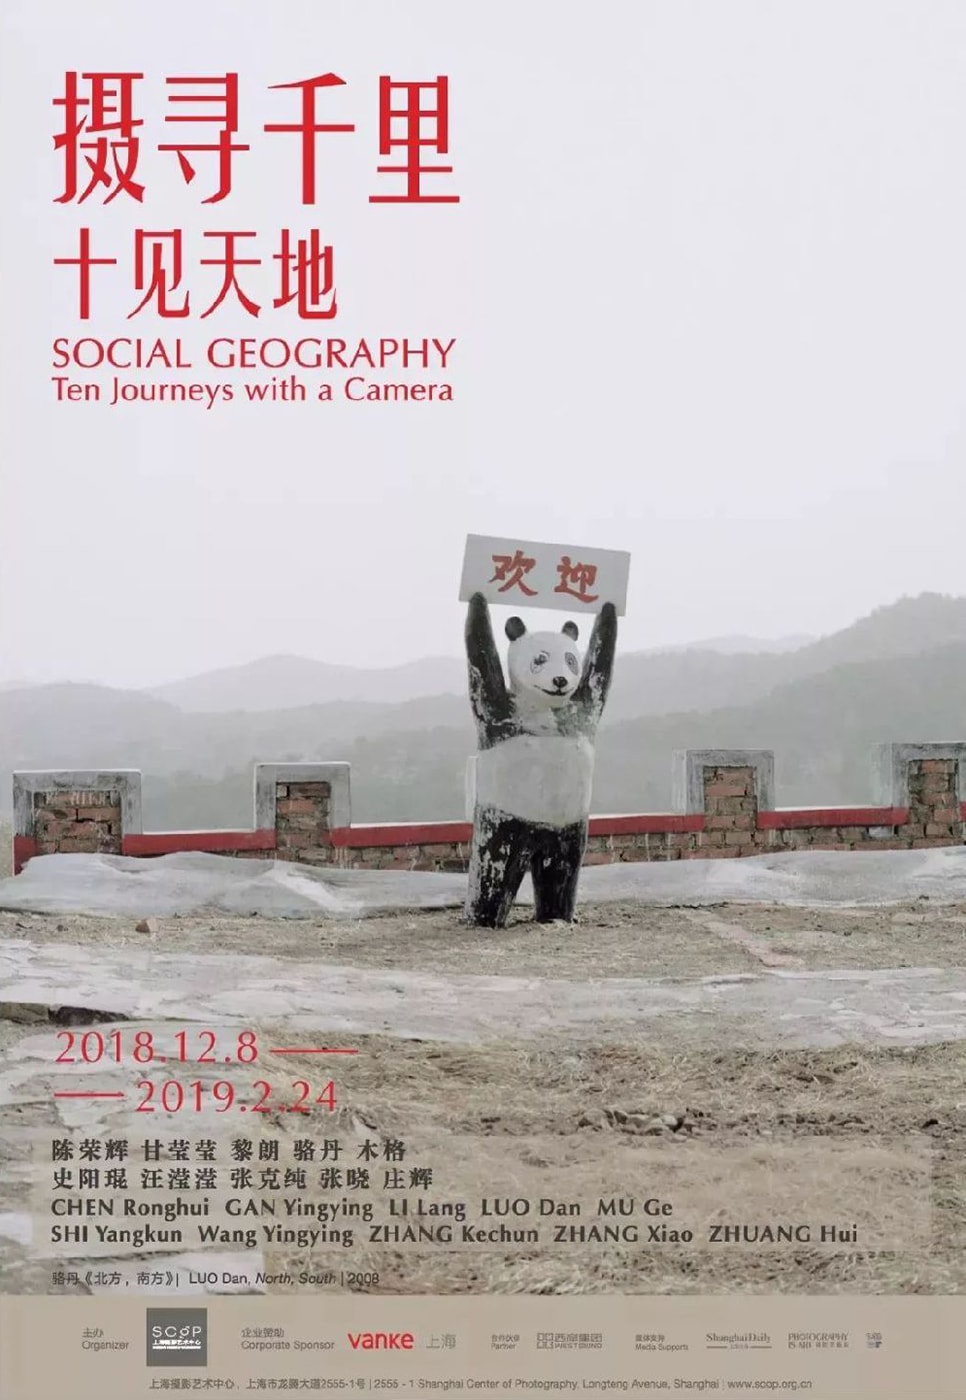 張曉參與上海攝影藝術中心群展 “攝尋千里：十見天地”